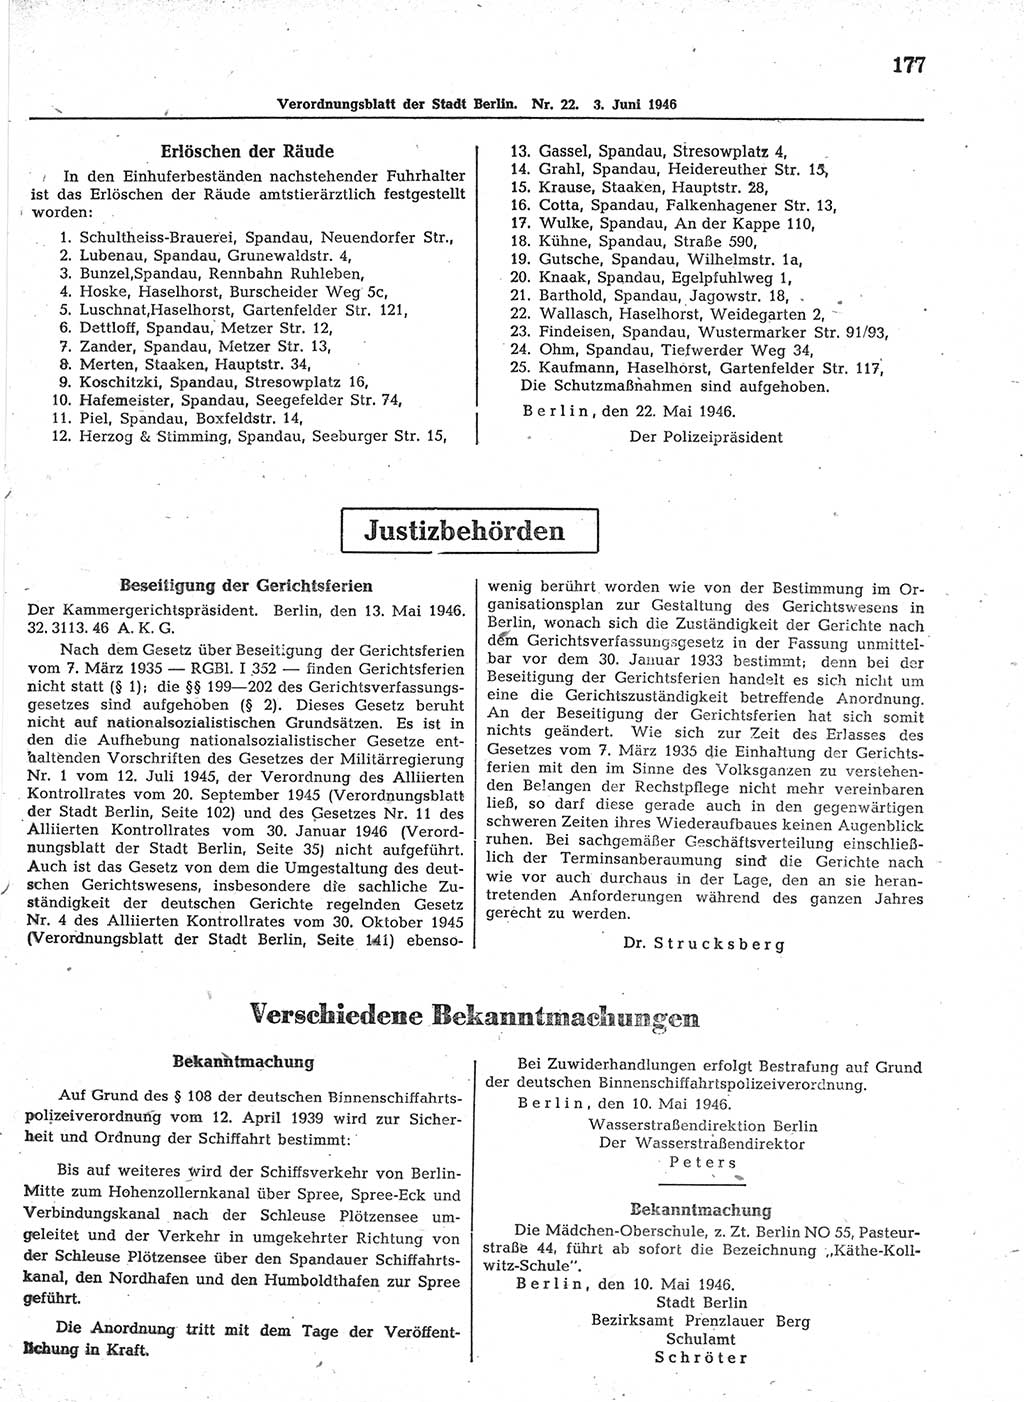 Verordnungsblatt (VOBl.) der Stadt Berlin, für Groß-Berlin 1946, Seite 177 (VOBl. Bln. 1946, S. 177)